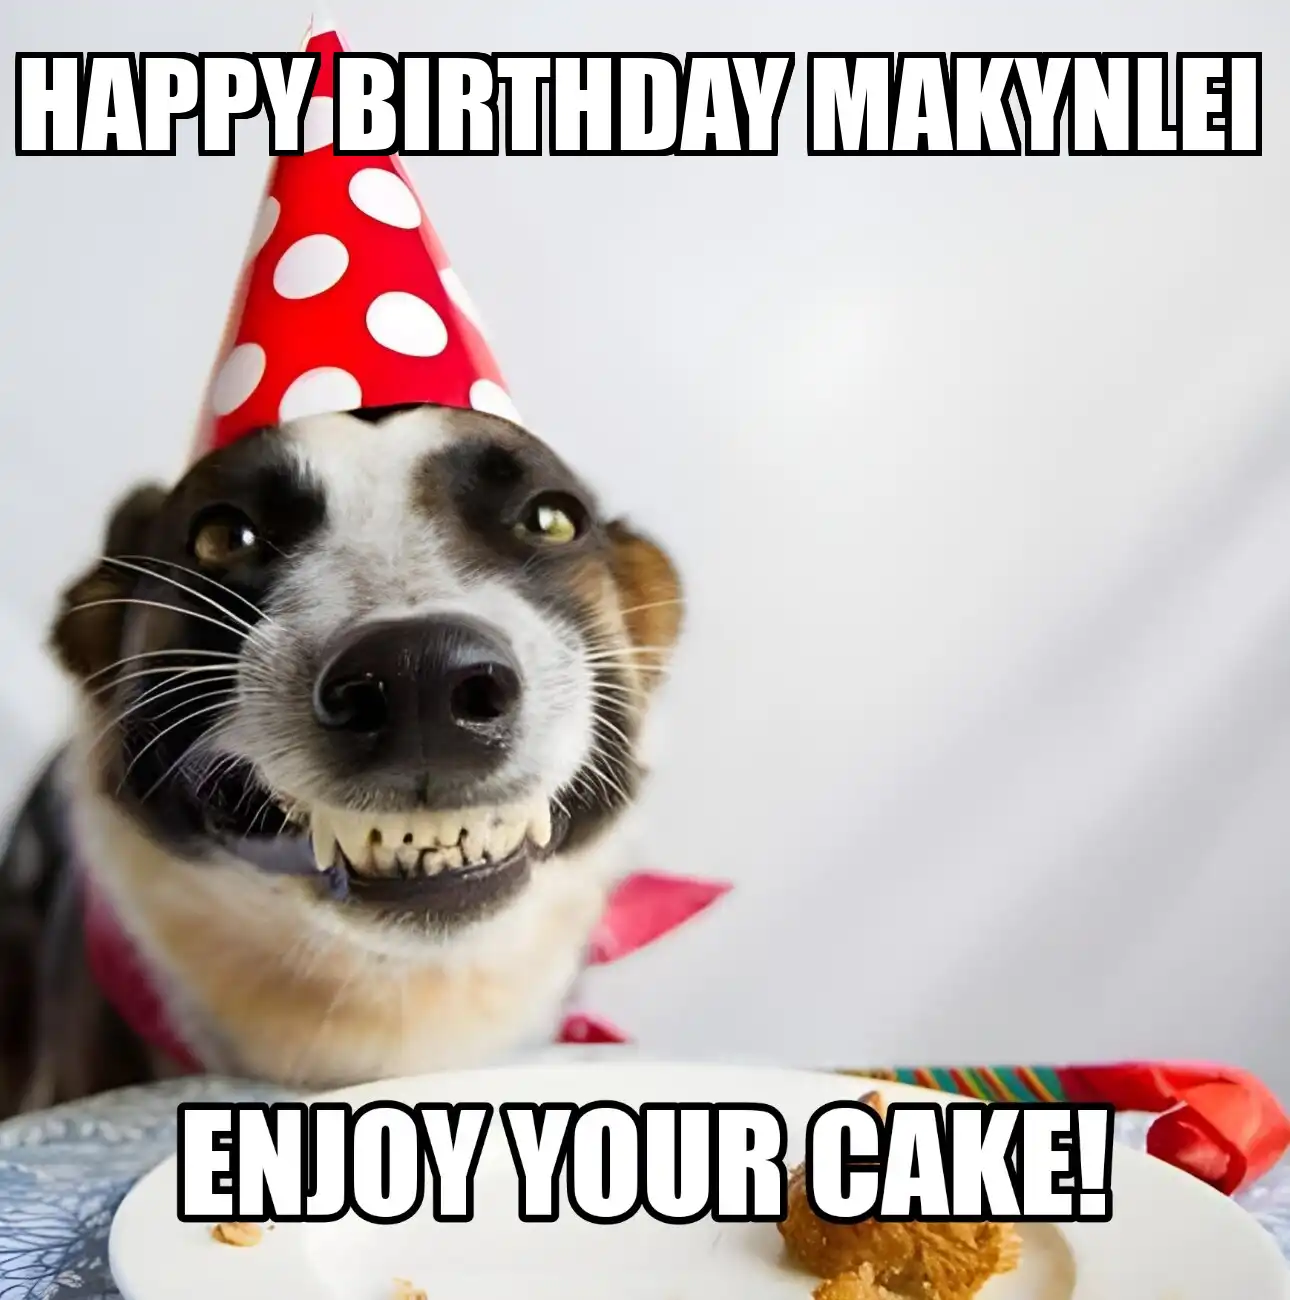 Happy Birthday Makynlei Enjoy Your Cake Dog Meme